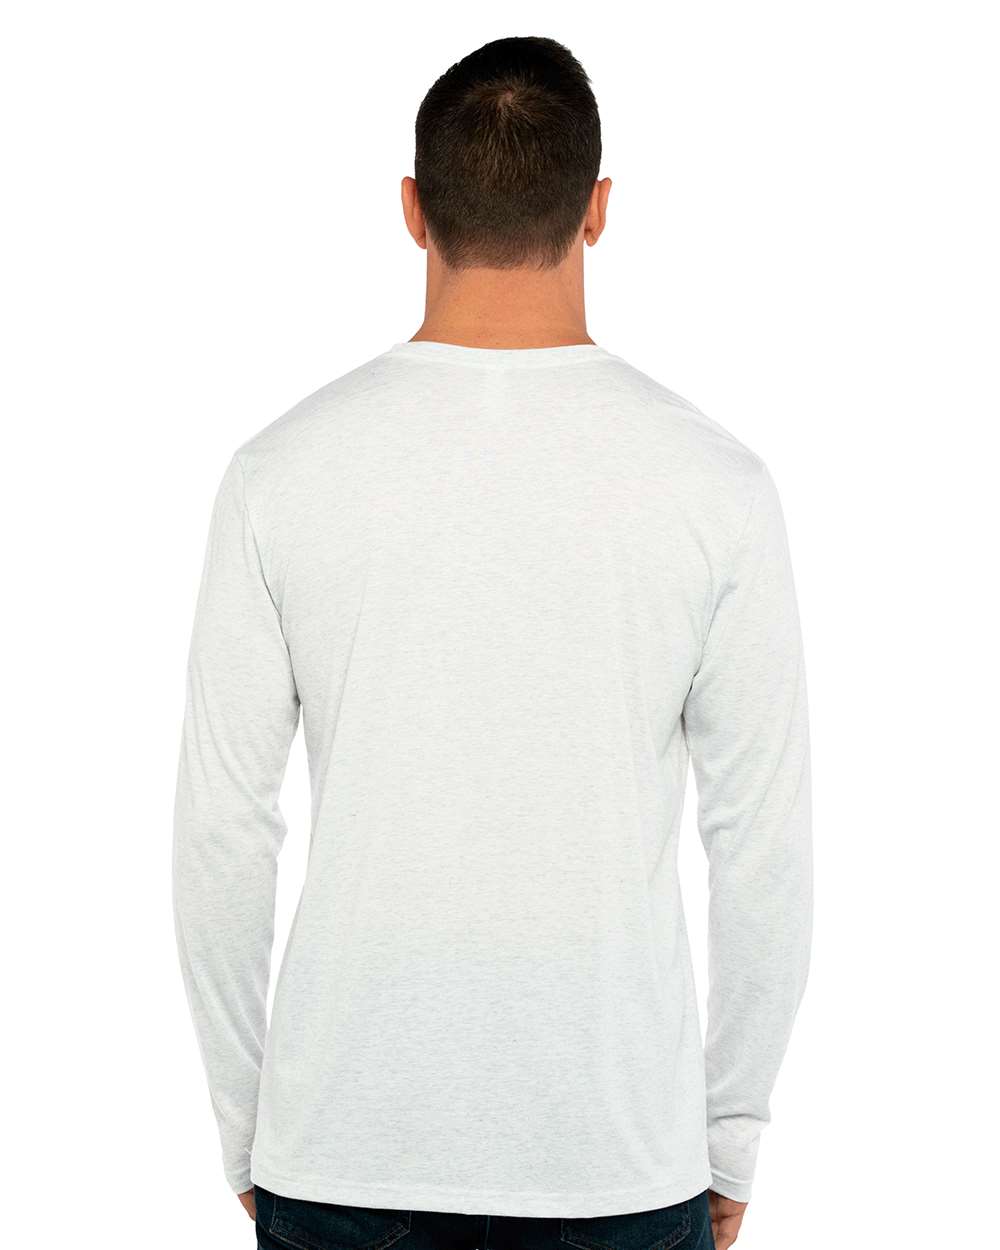 Next Level - Triblend Long Sleeve T-Shirt - 6071